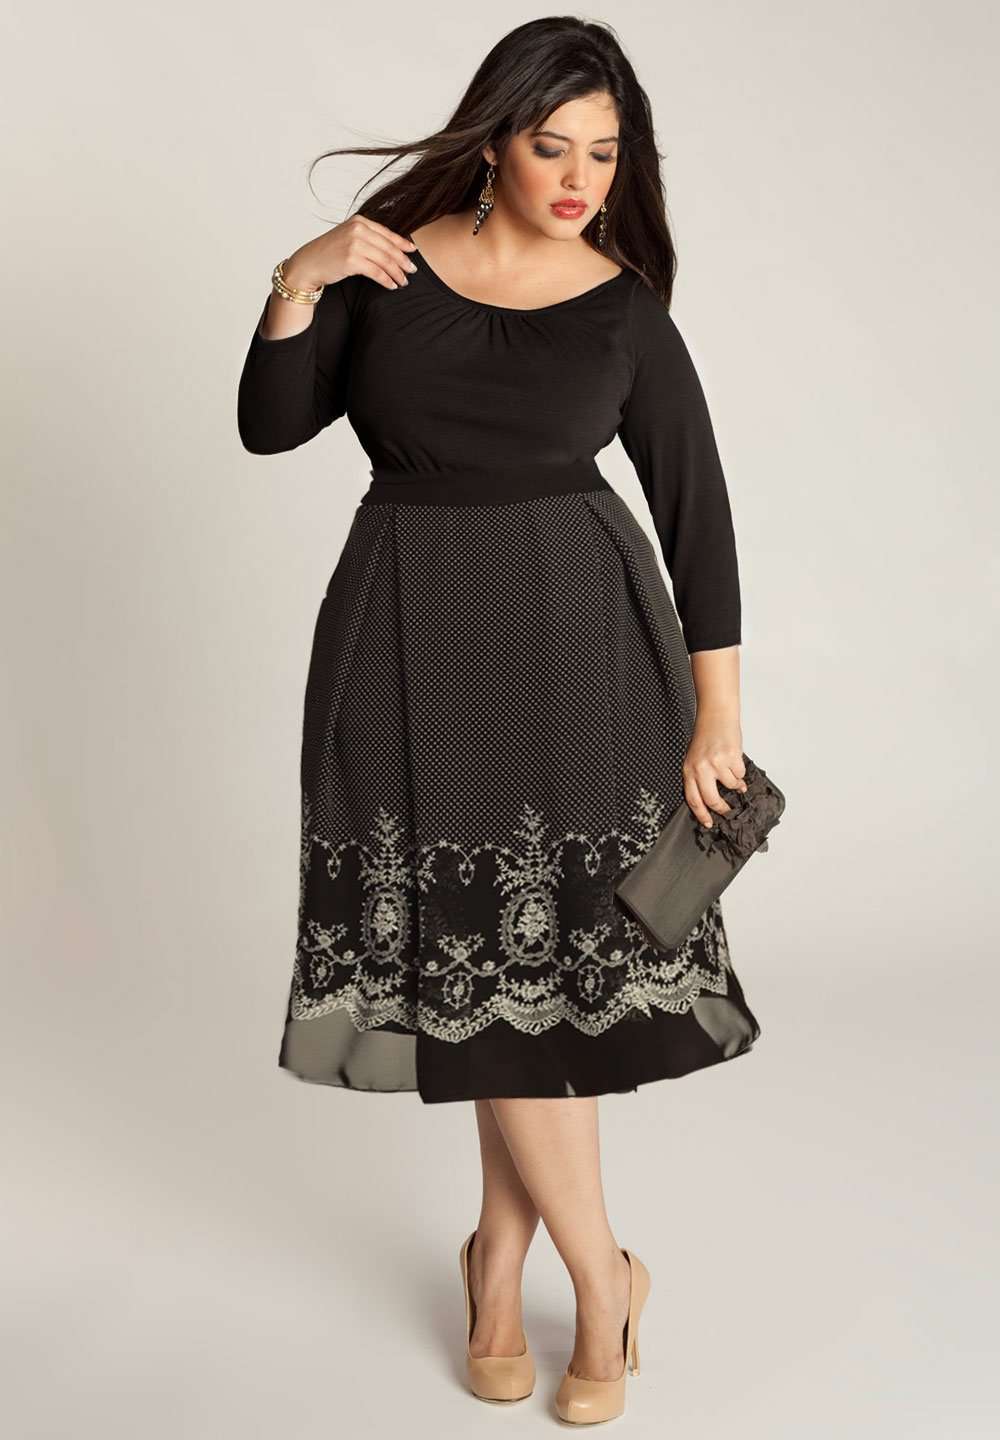 stof Prime Klappe Black made to measure chiffon dress | IGIGI.com